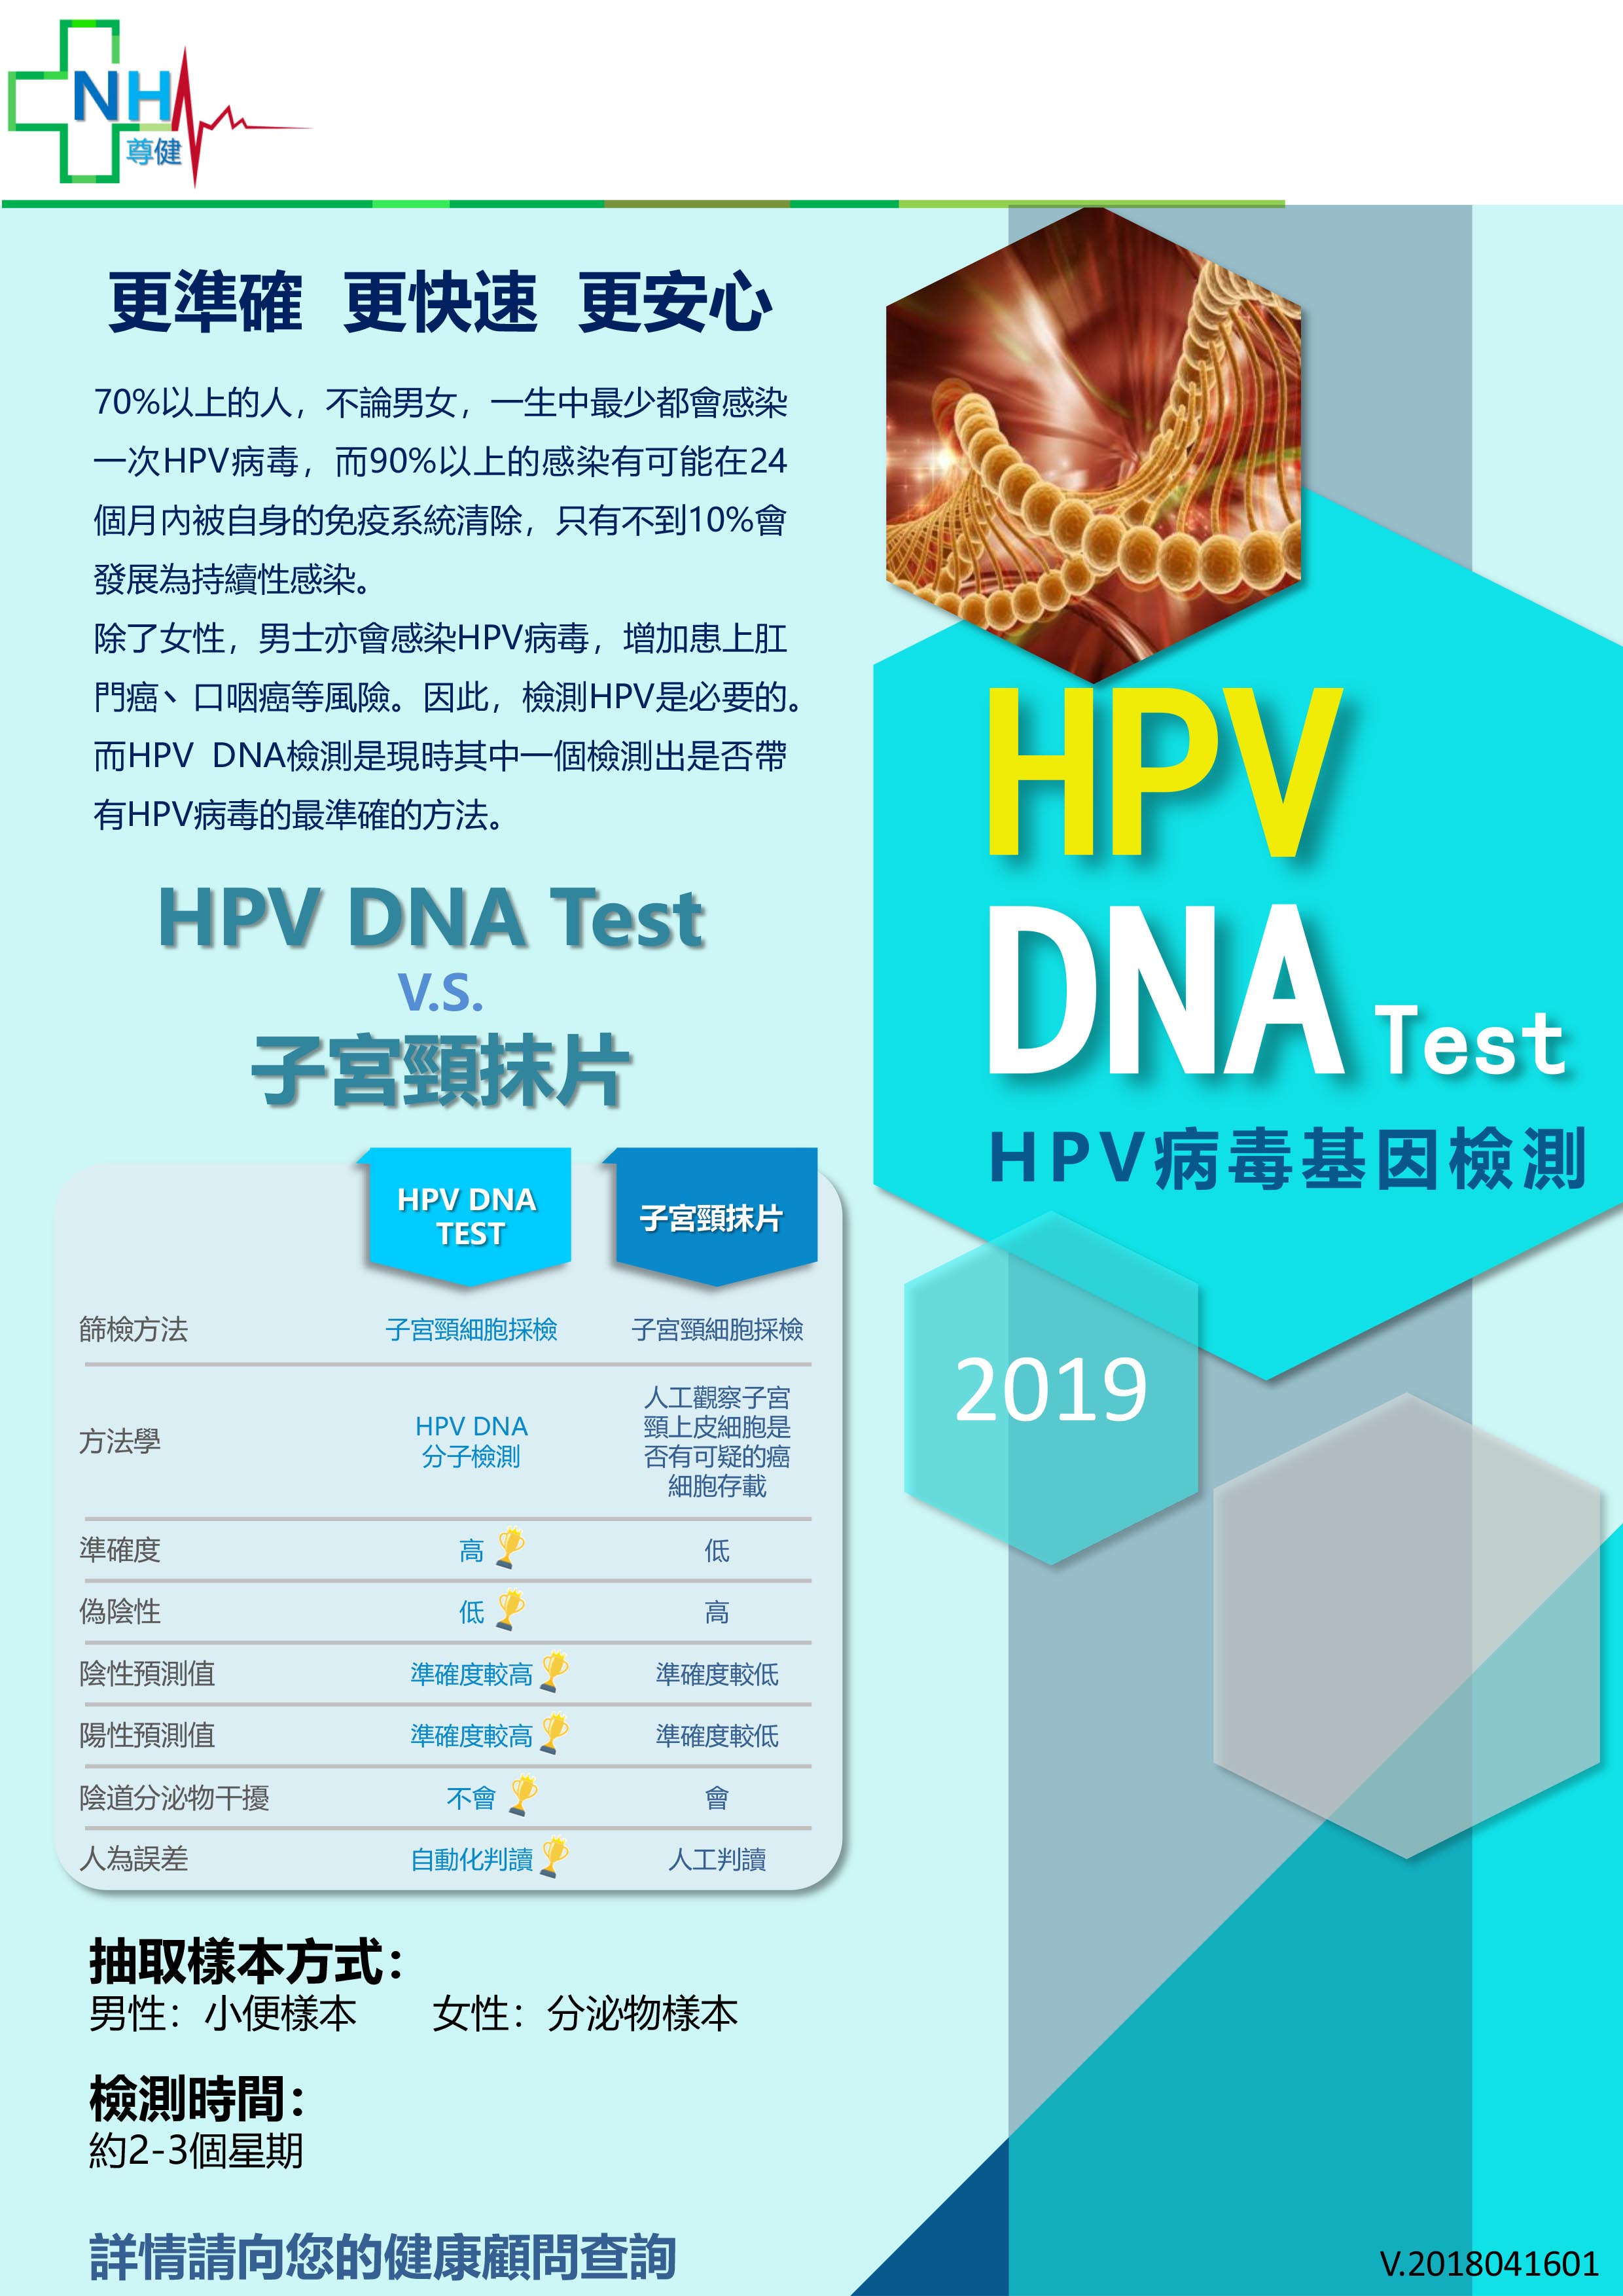 hpv-dna-test.jpg